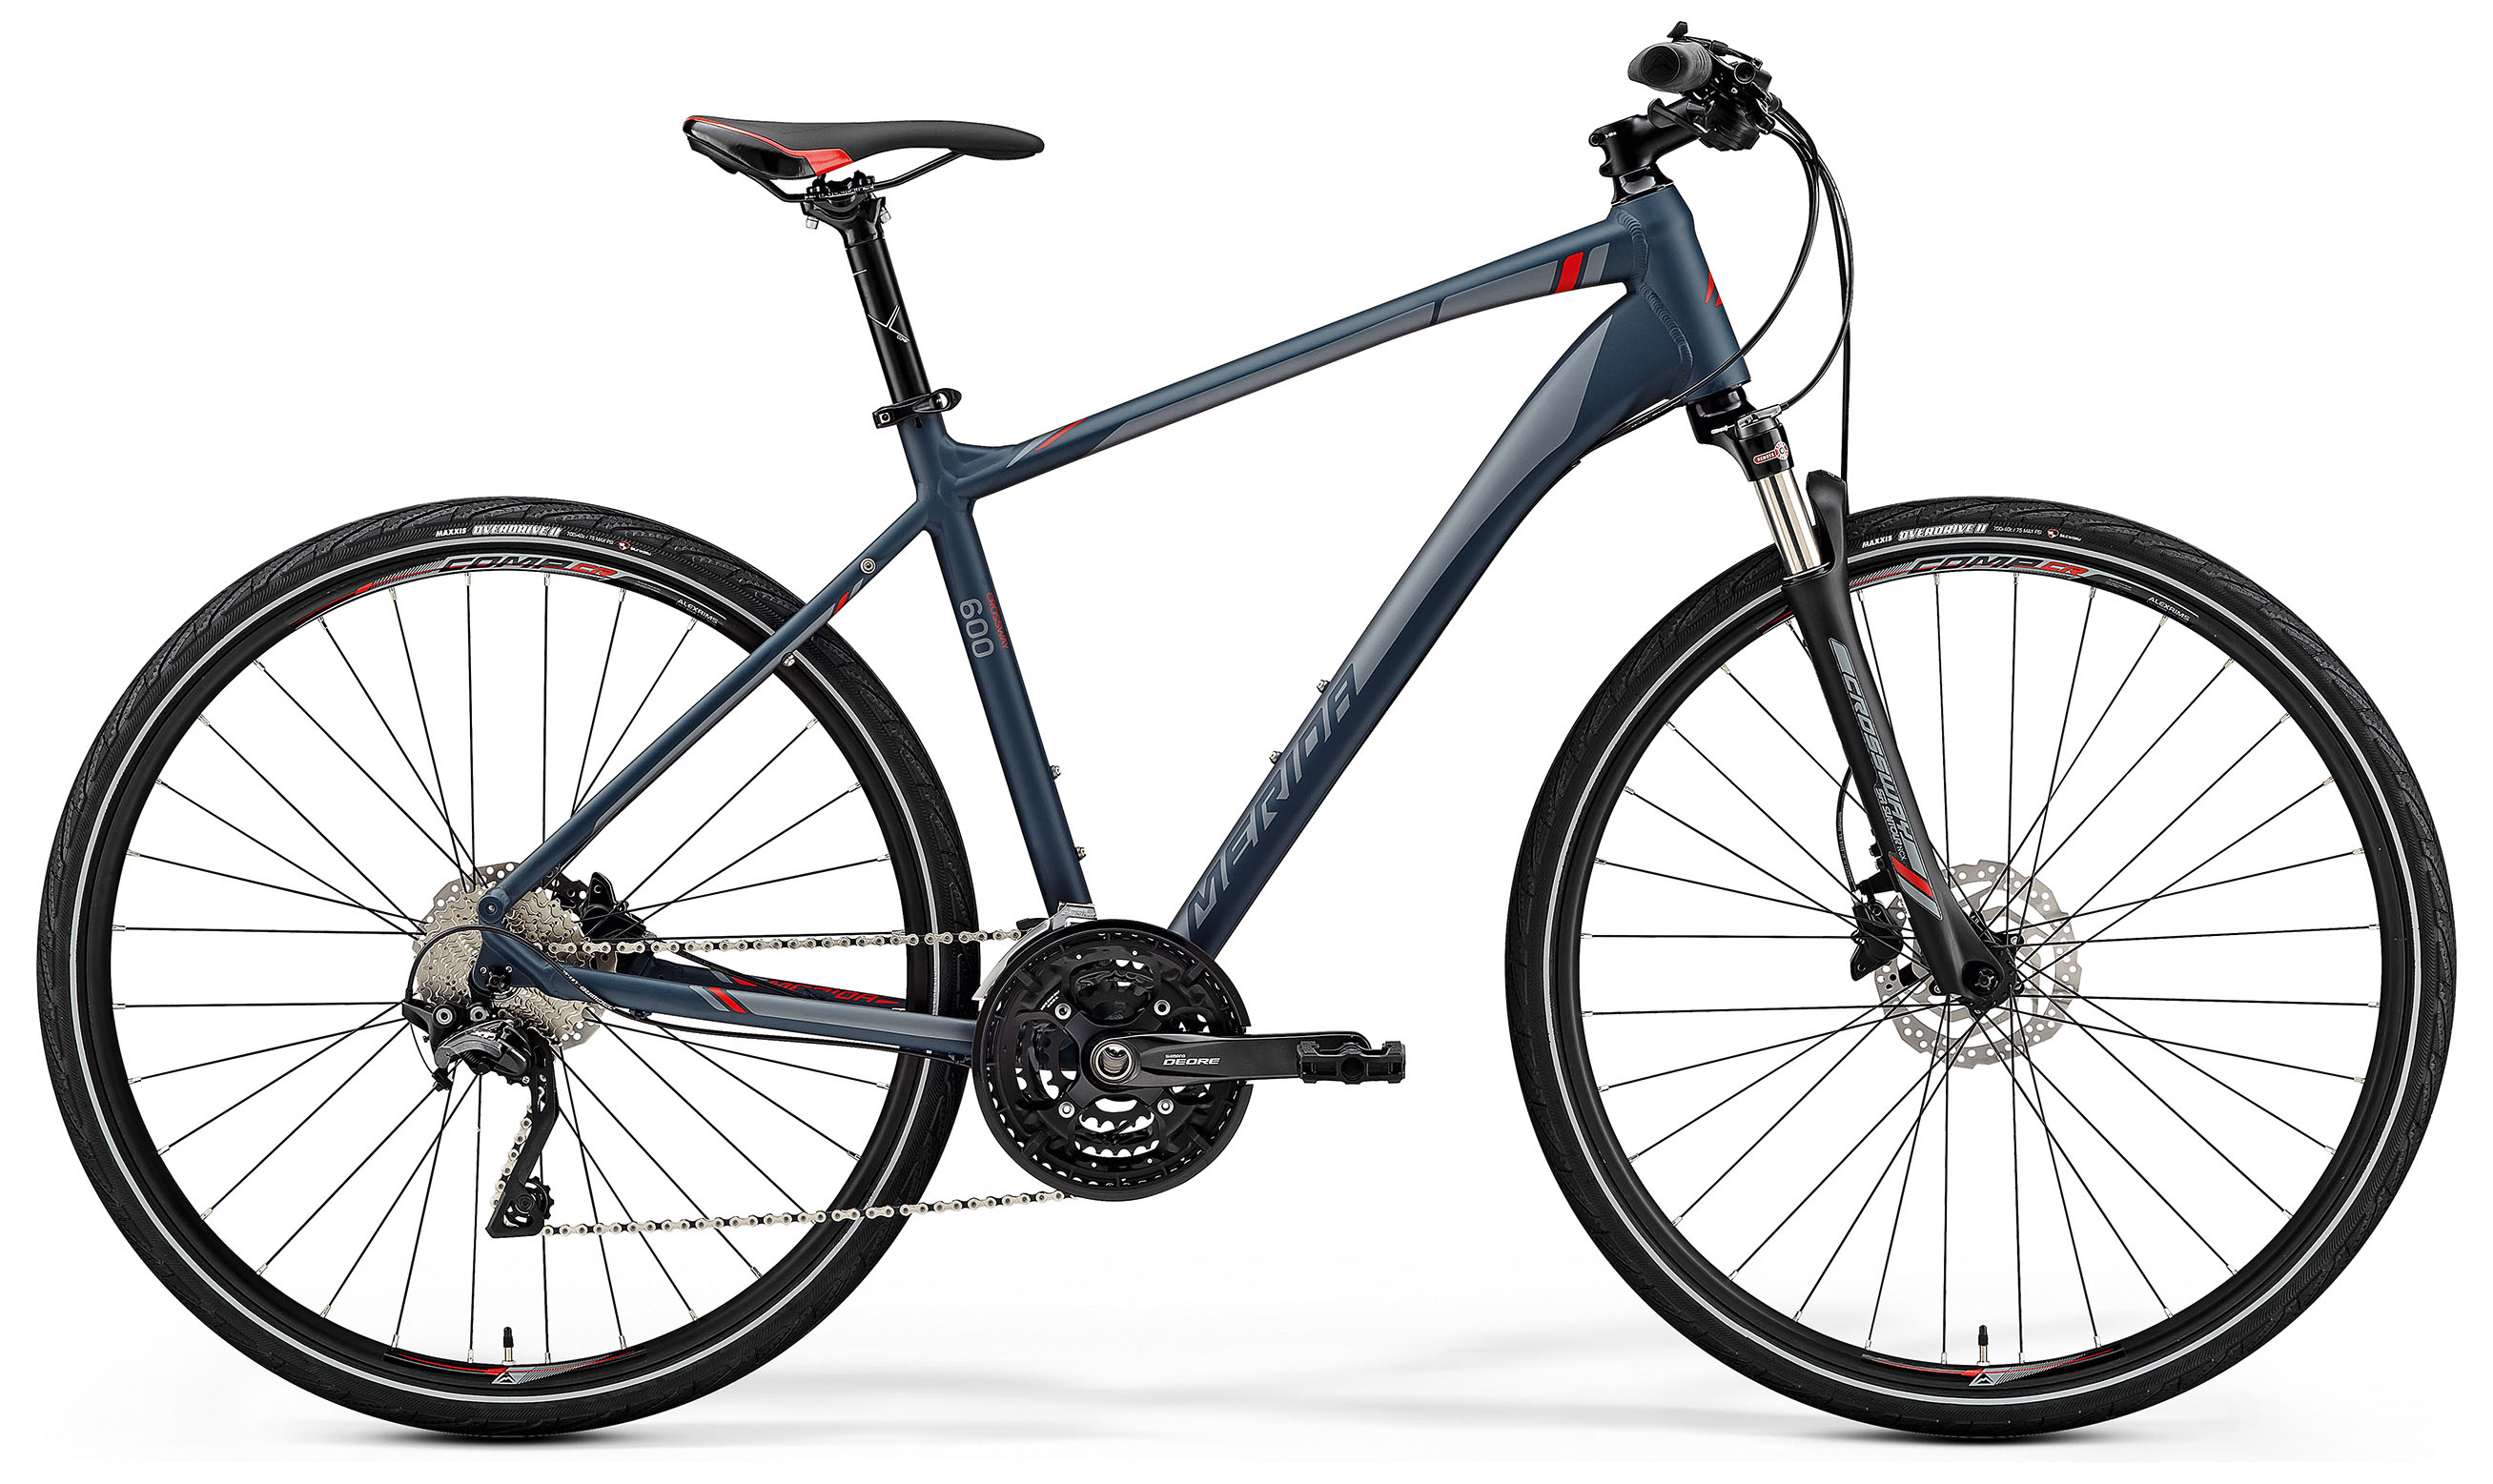  Отзывы о Городском велосипеде Merida Crossway 600 2019